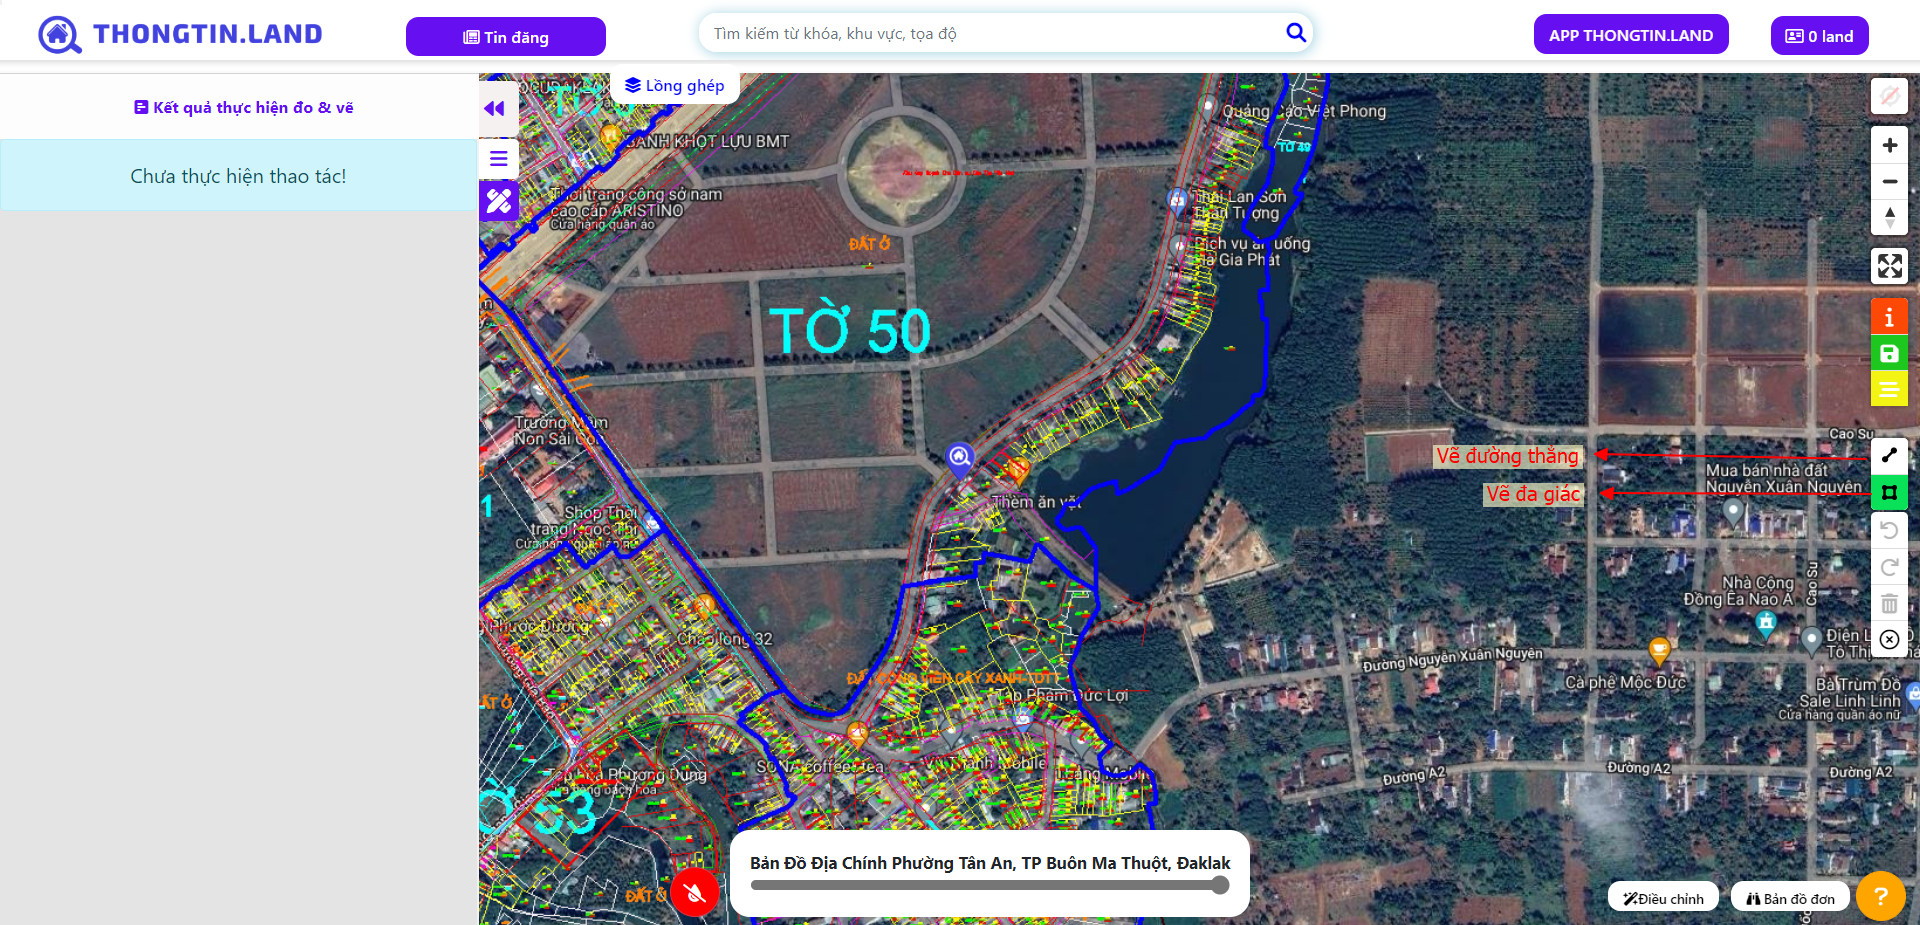 Thông tin bất động sản trên bản đồ hiện đã được cập nhật chính xác trên Apple Maps tại Việt Nam. Hãy xem hình ảnh liên quan để có cái nhìn tổng quan về thị trường bất động sản địa phương và chọn lựa được những tài sản giá trị cho mình.